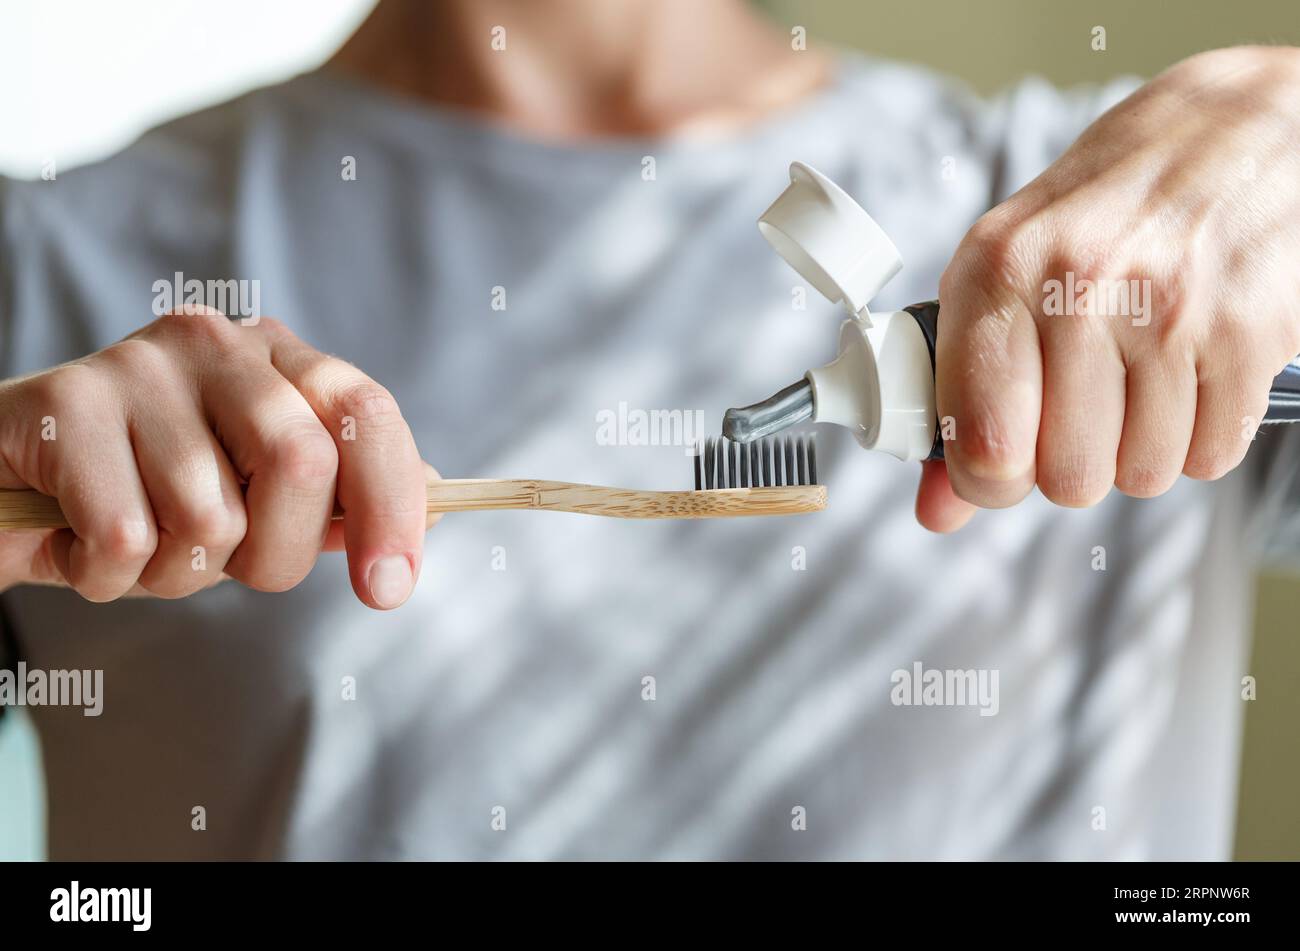 Zahnpasta auf eine Bambuszahnbürste auftragen. Hände, die den Schlauch mit einer Zahnpasta zusammendrücken. Zahnheilkunde und Hygenkonzept. Stockfoto